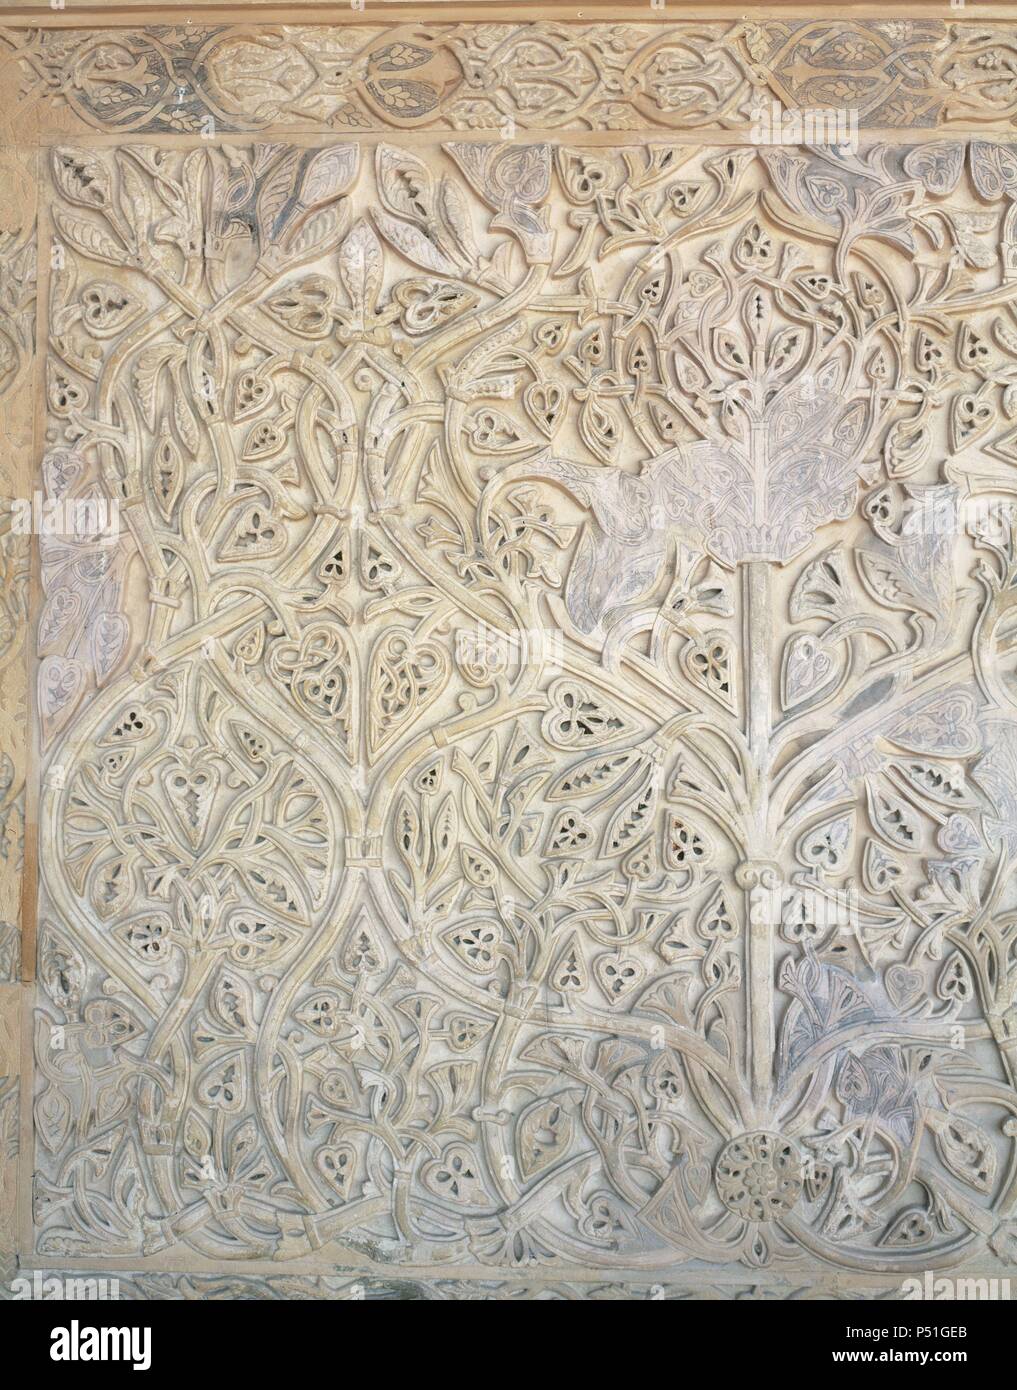 Arte Islamico Espana S X Medina Azahara Ciudad Edificada Cerca De Cordoba Entre Los Anos 936 Y